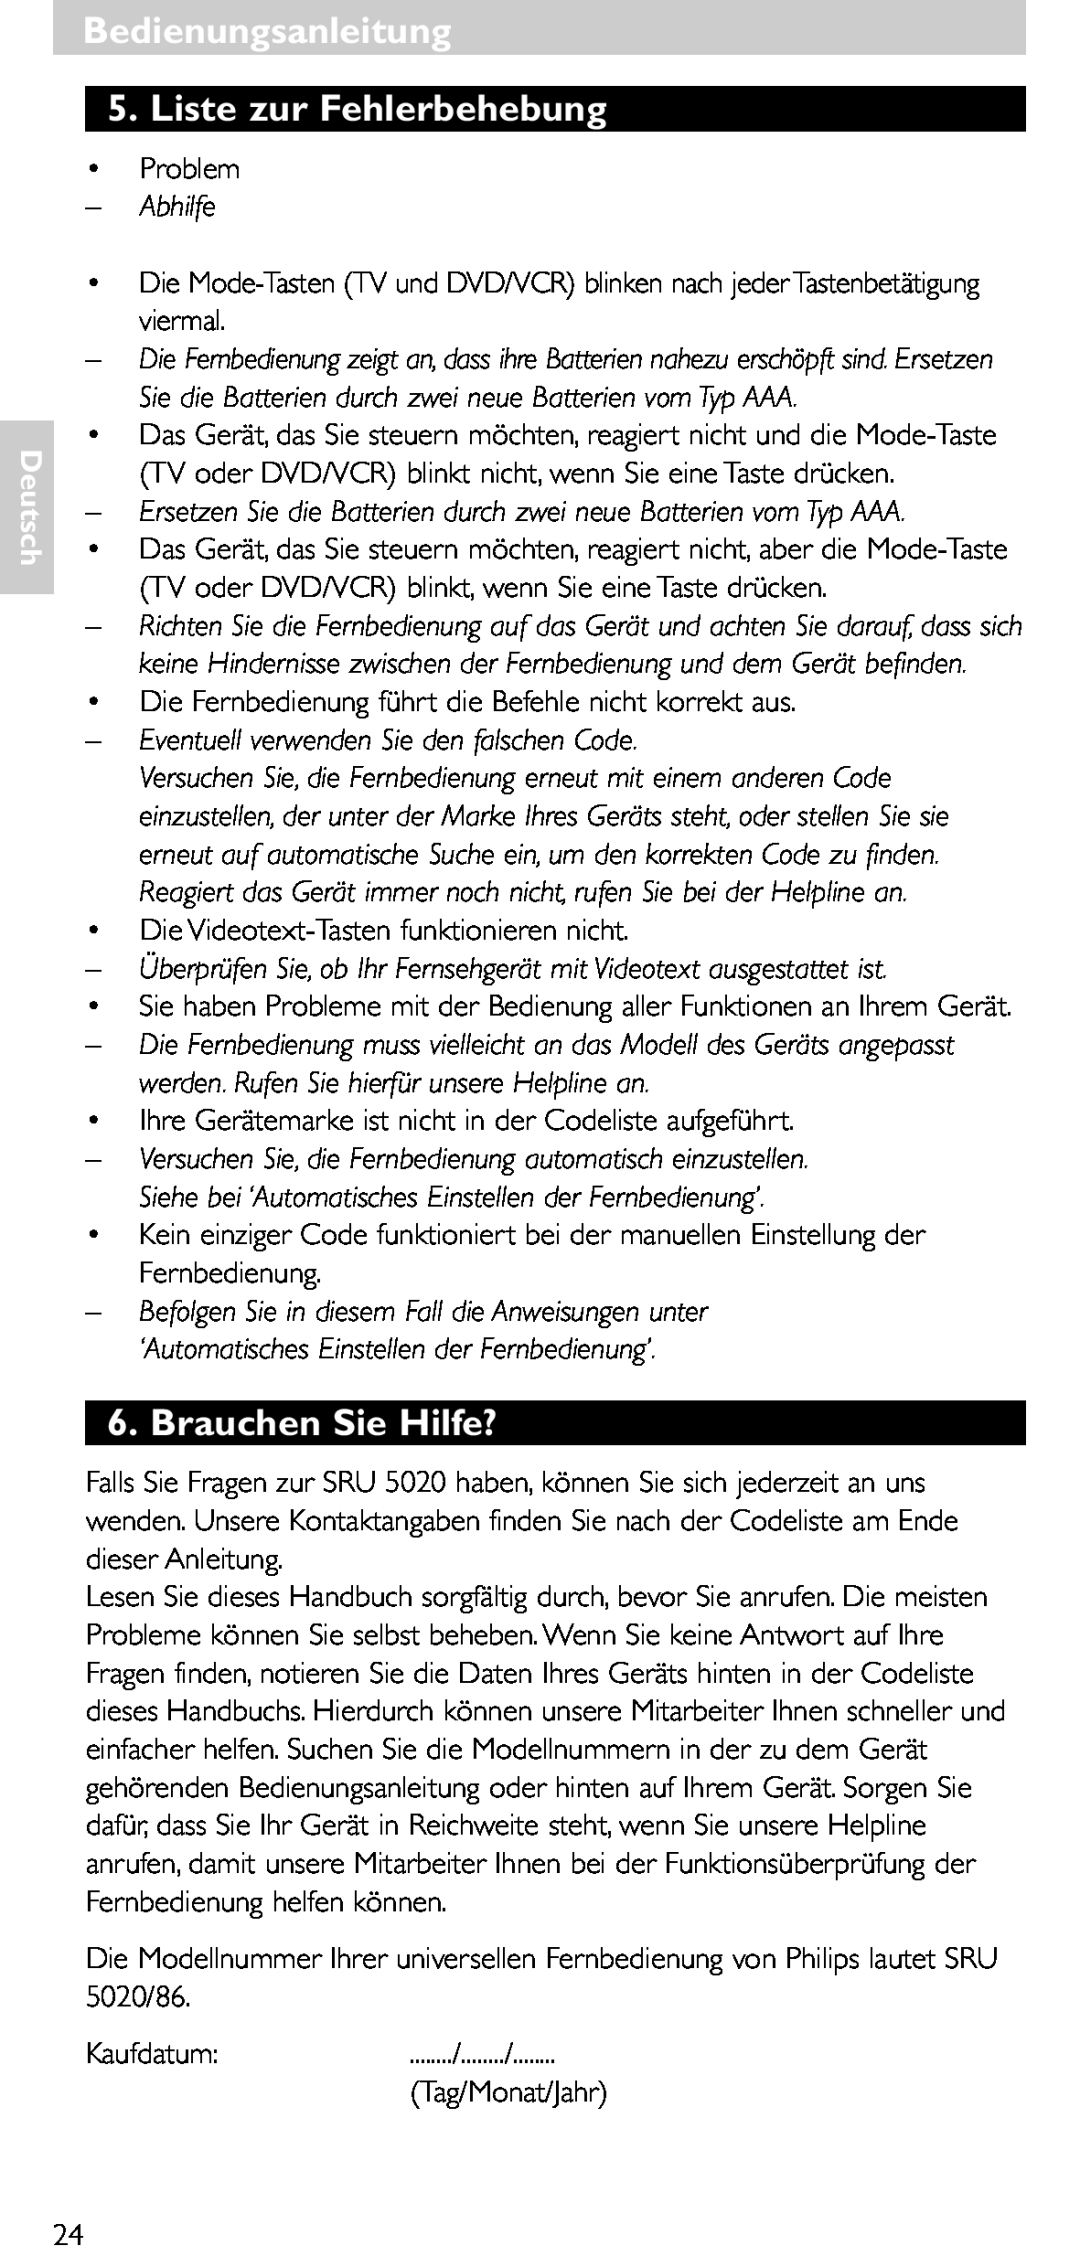 Philips SRU 5020/86 manual Bedienungsanleitung 5. Liste zur Fehlerbehebung, Brauchen Sie Hilfe?, Abhilfe, Deutsch 